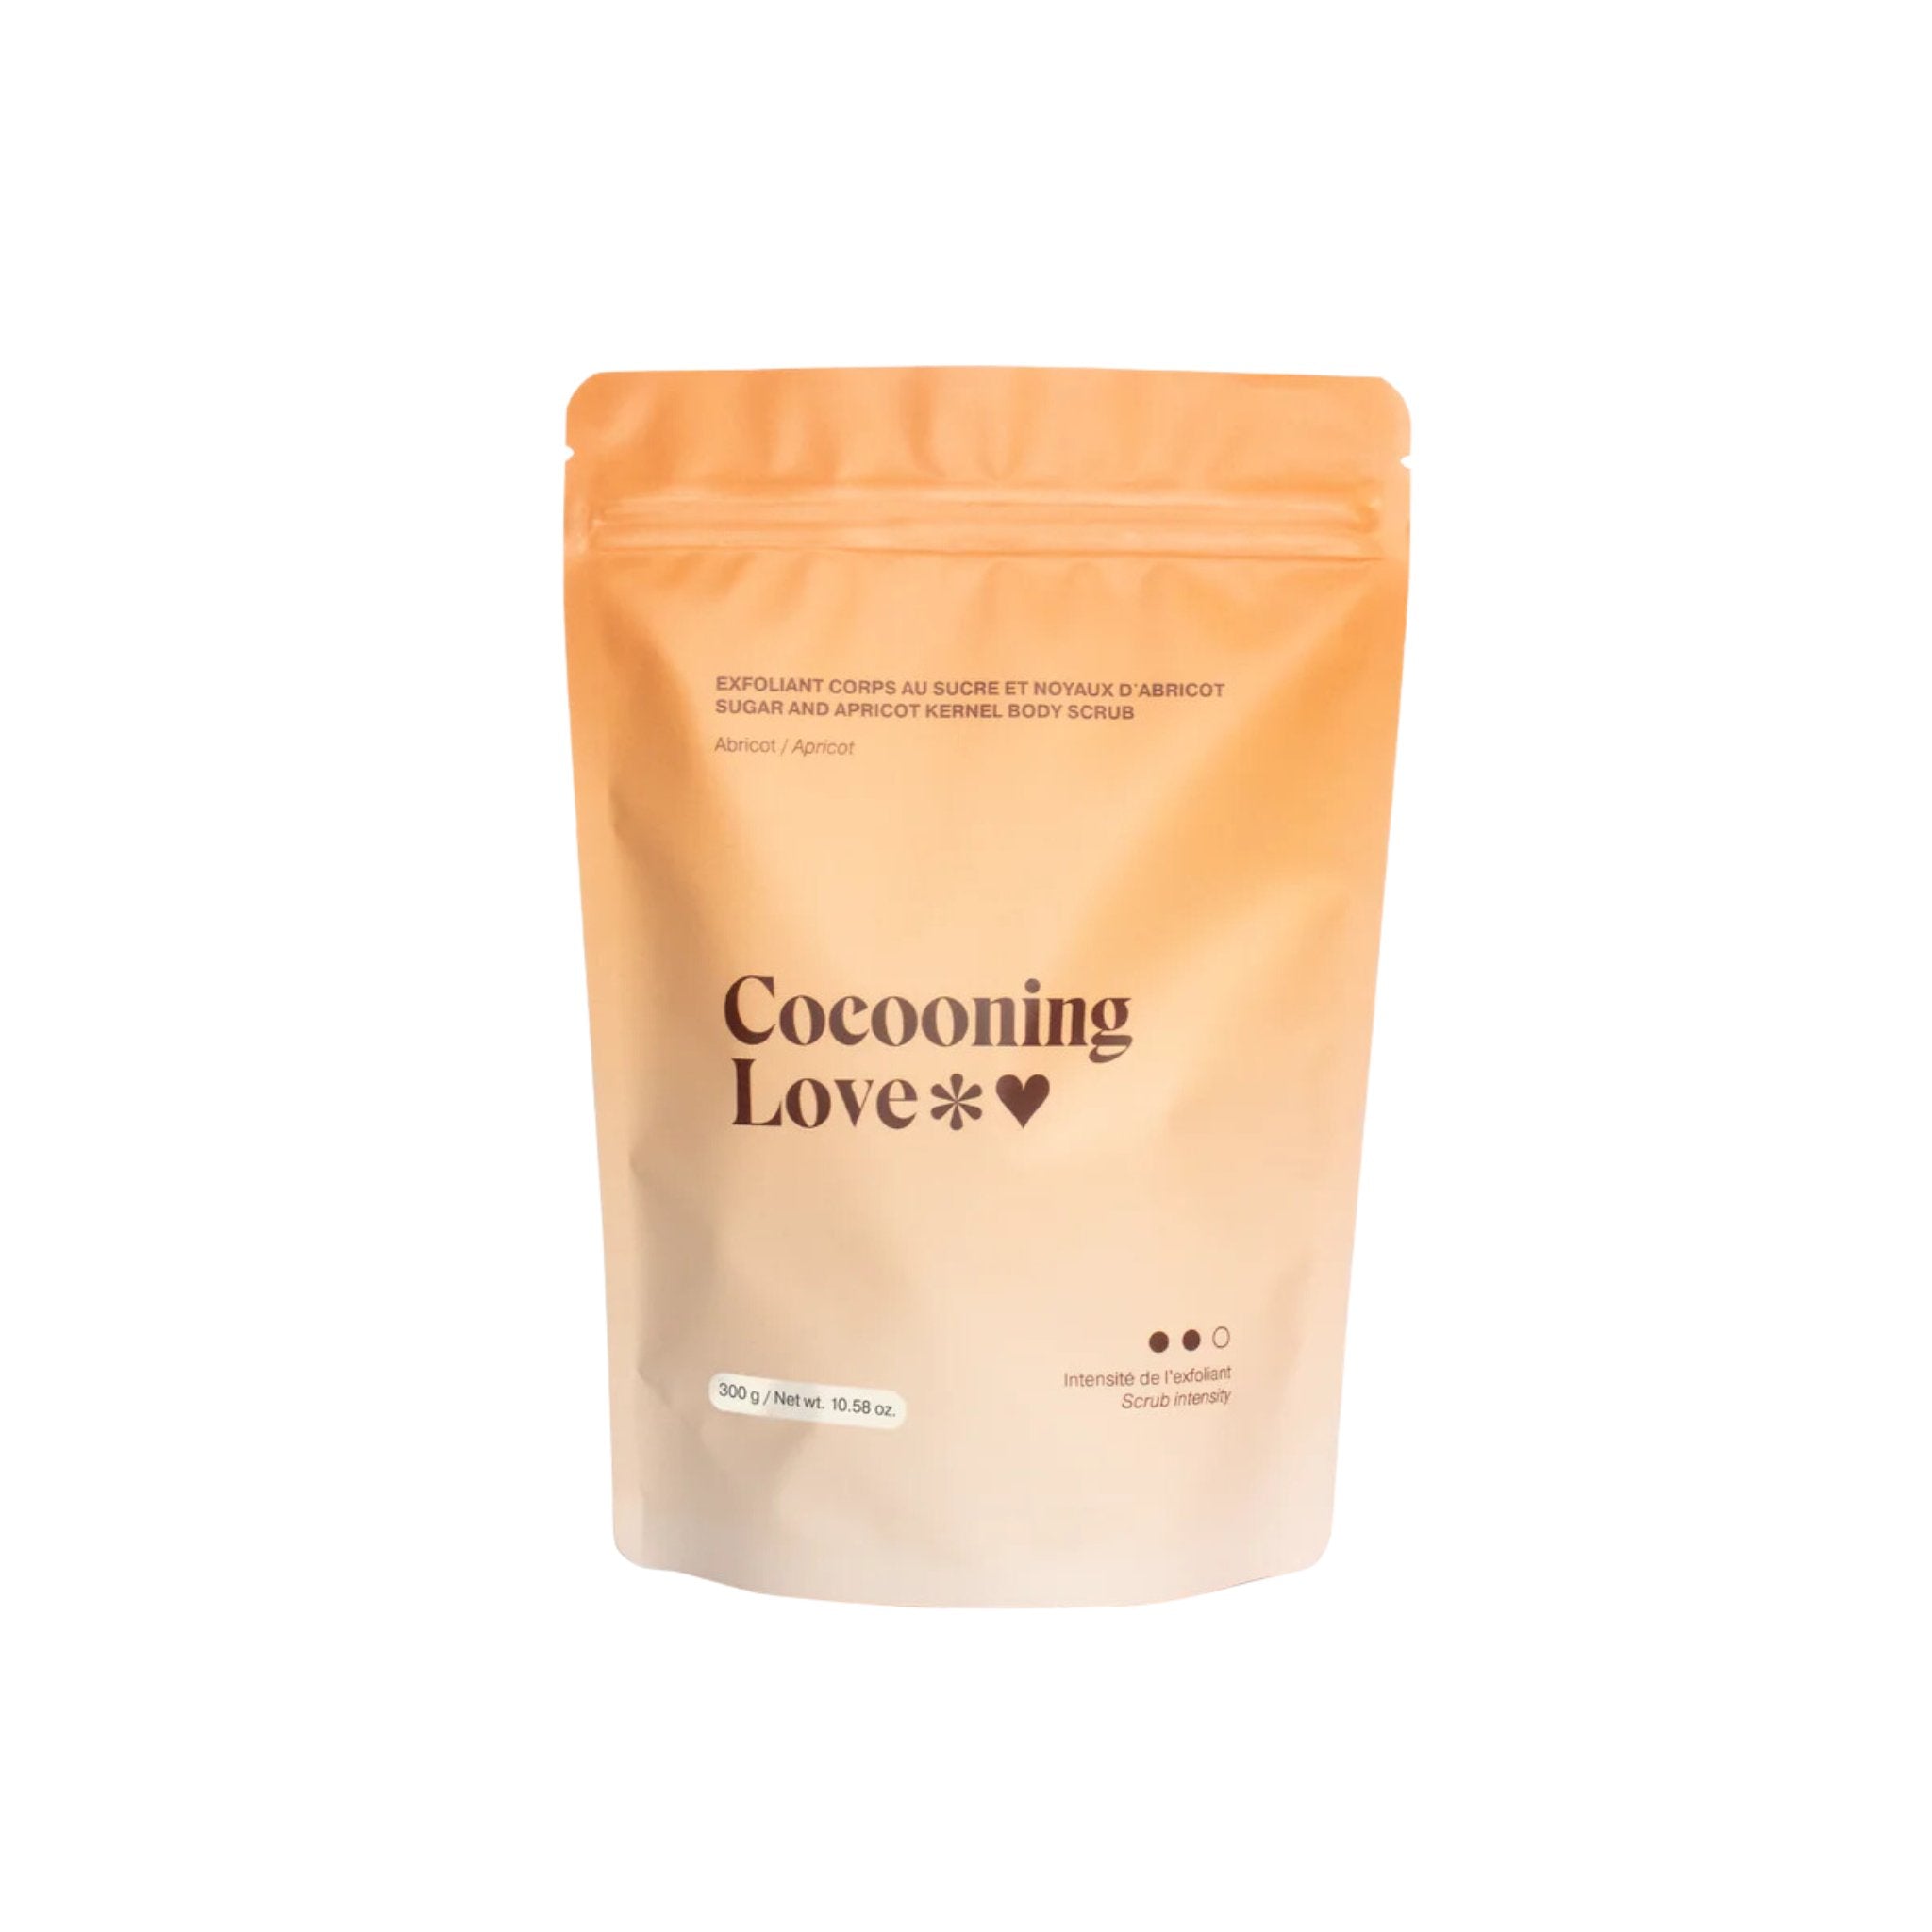 Cocooning Love. Exfoliant Corps au Sucre - Abricot - 300 gr - Concept C. Shop